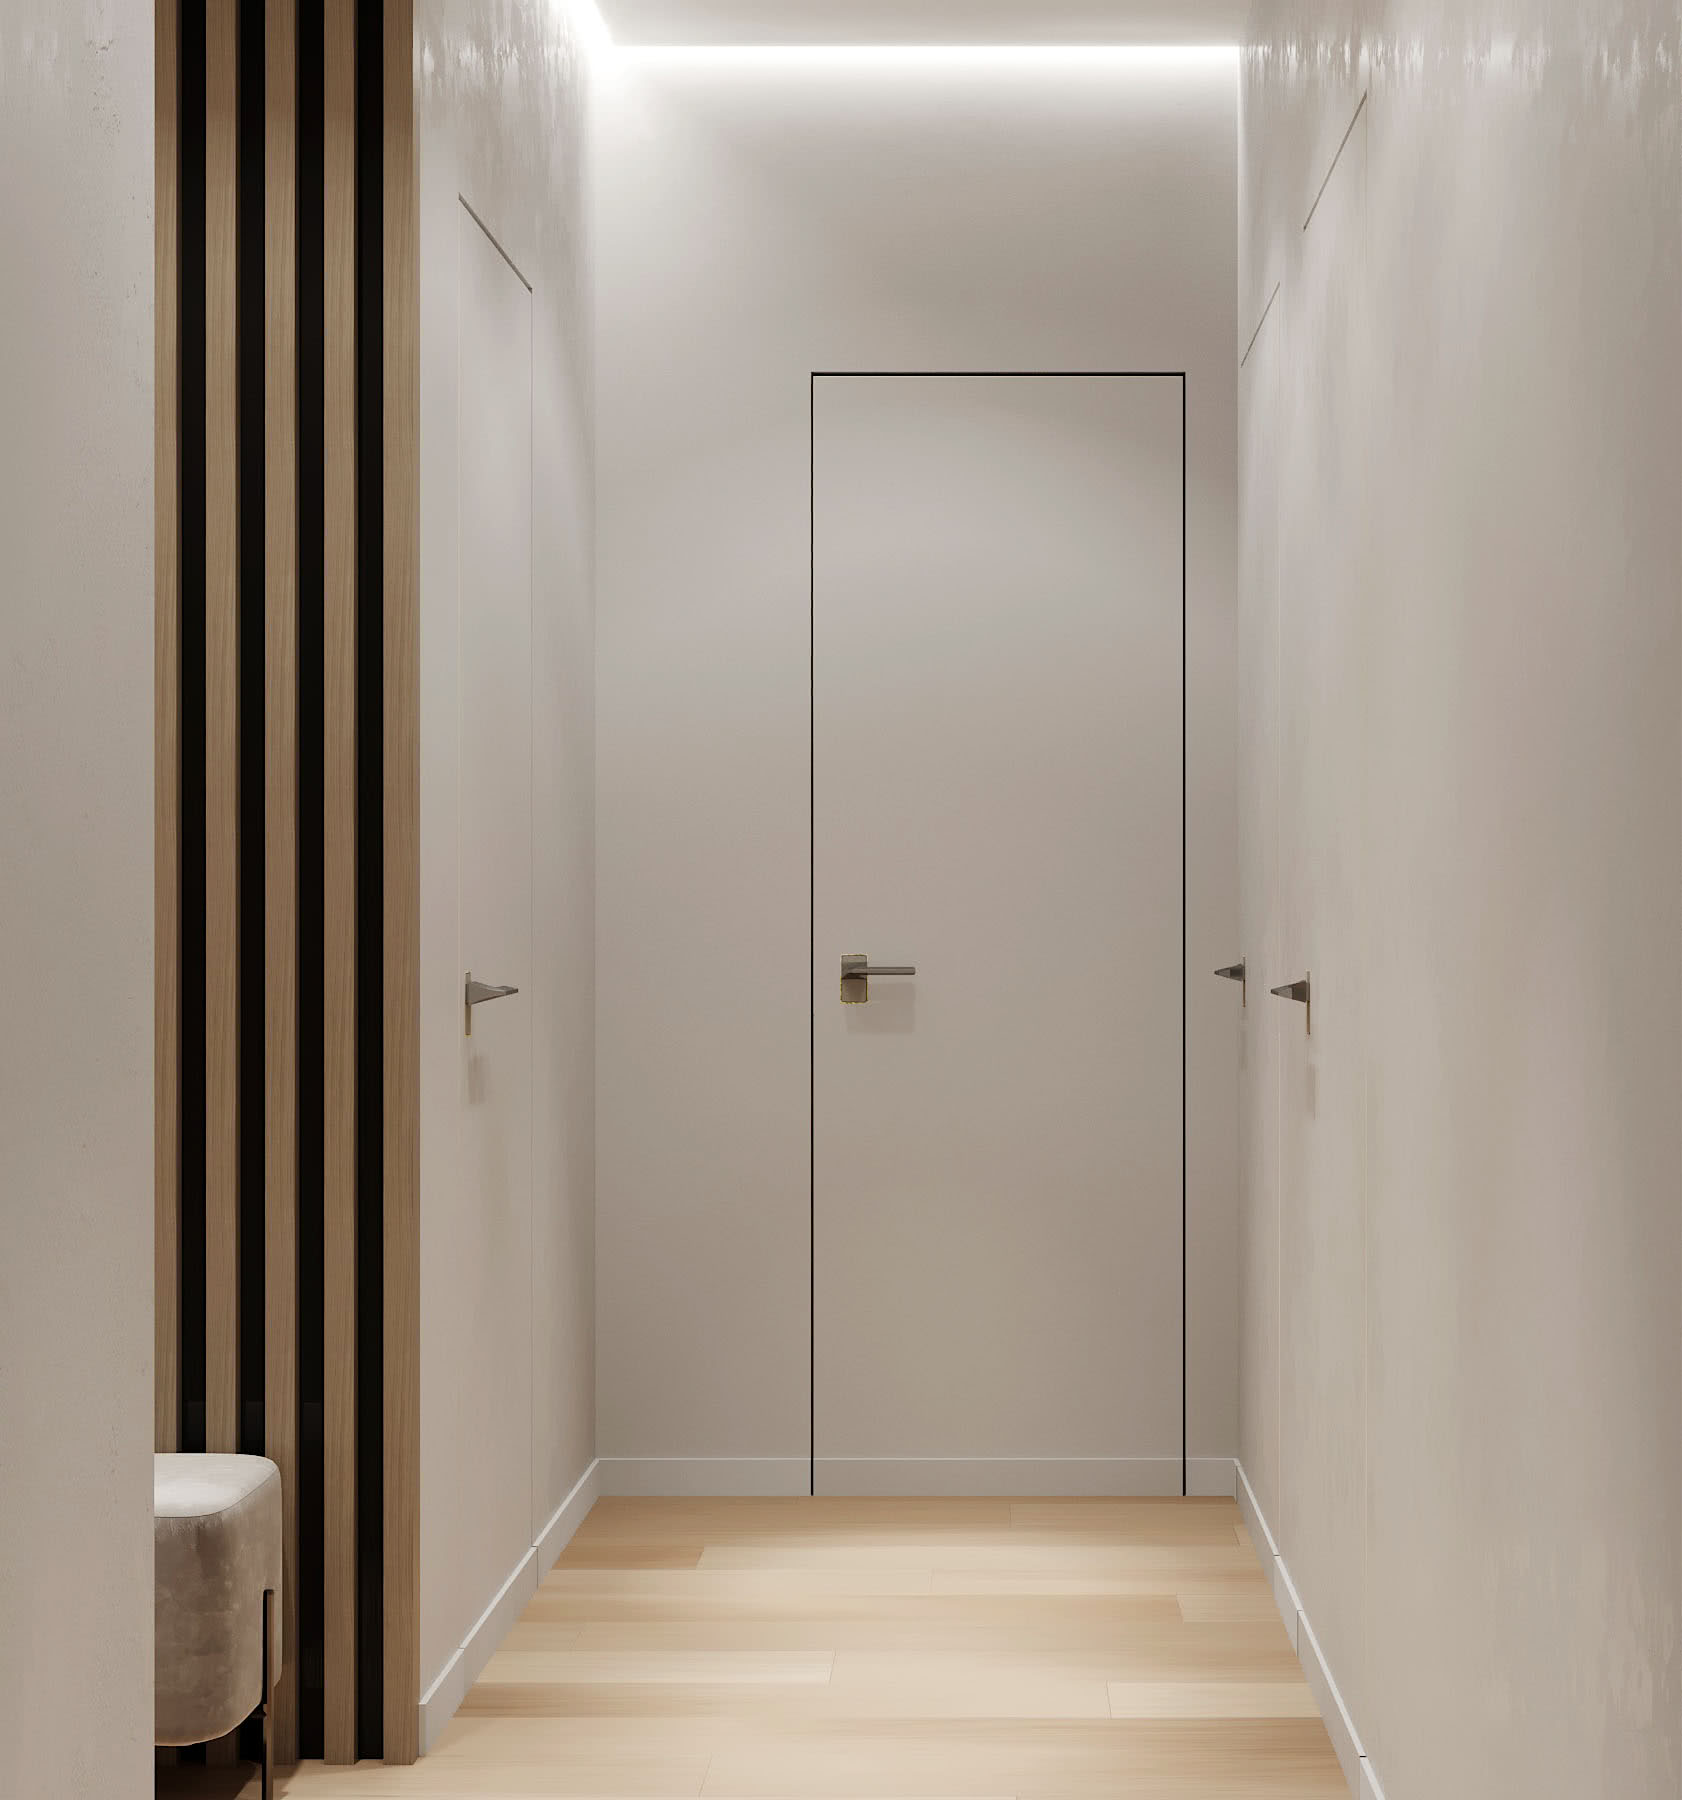 Ремонт коридора в квартире: фото дизайна до и после, идеи красивого интерьера